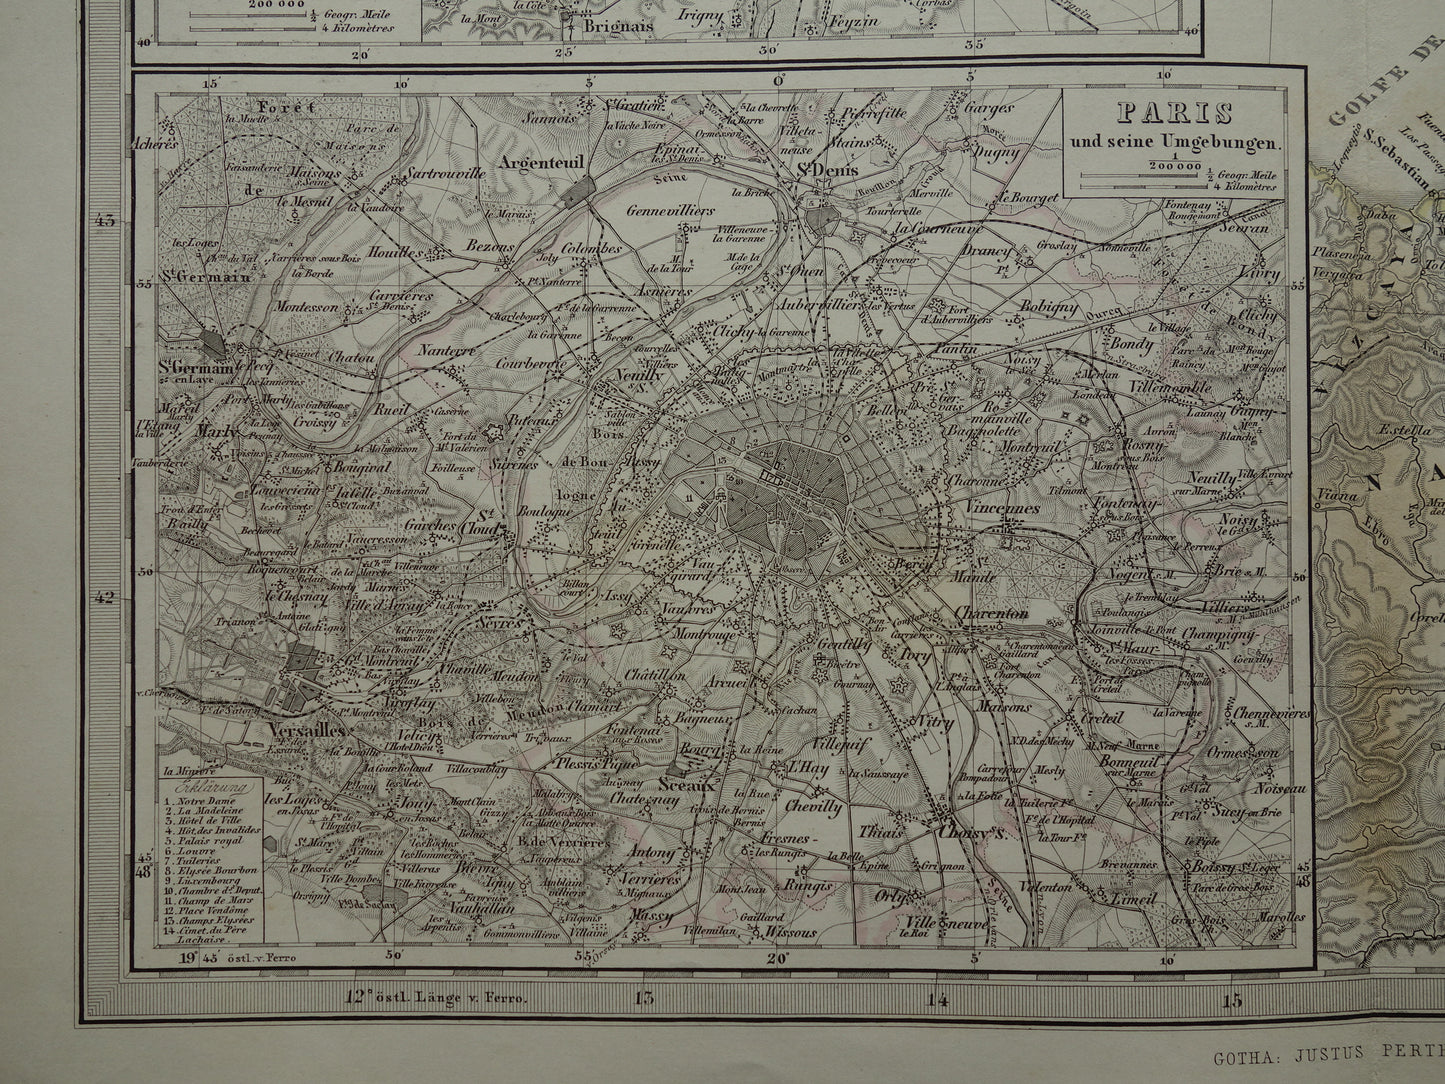 FRANKRIJK Grote oude kaart van Frankrijk 1863 originele antieke landkaart poster 74x89 cm met jaartal